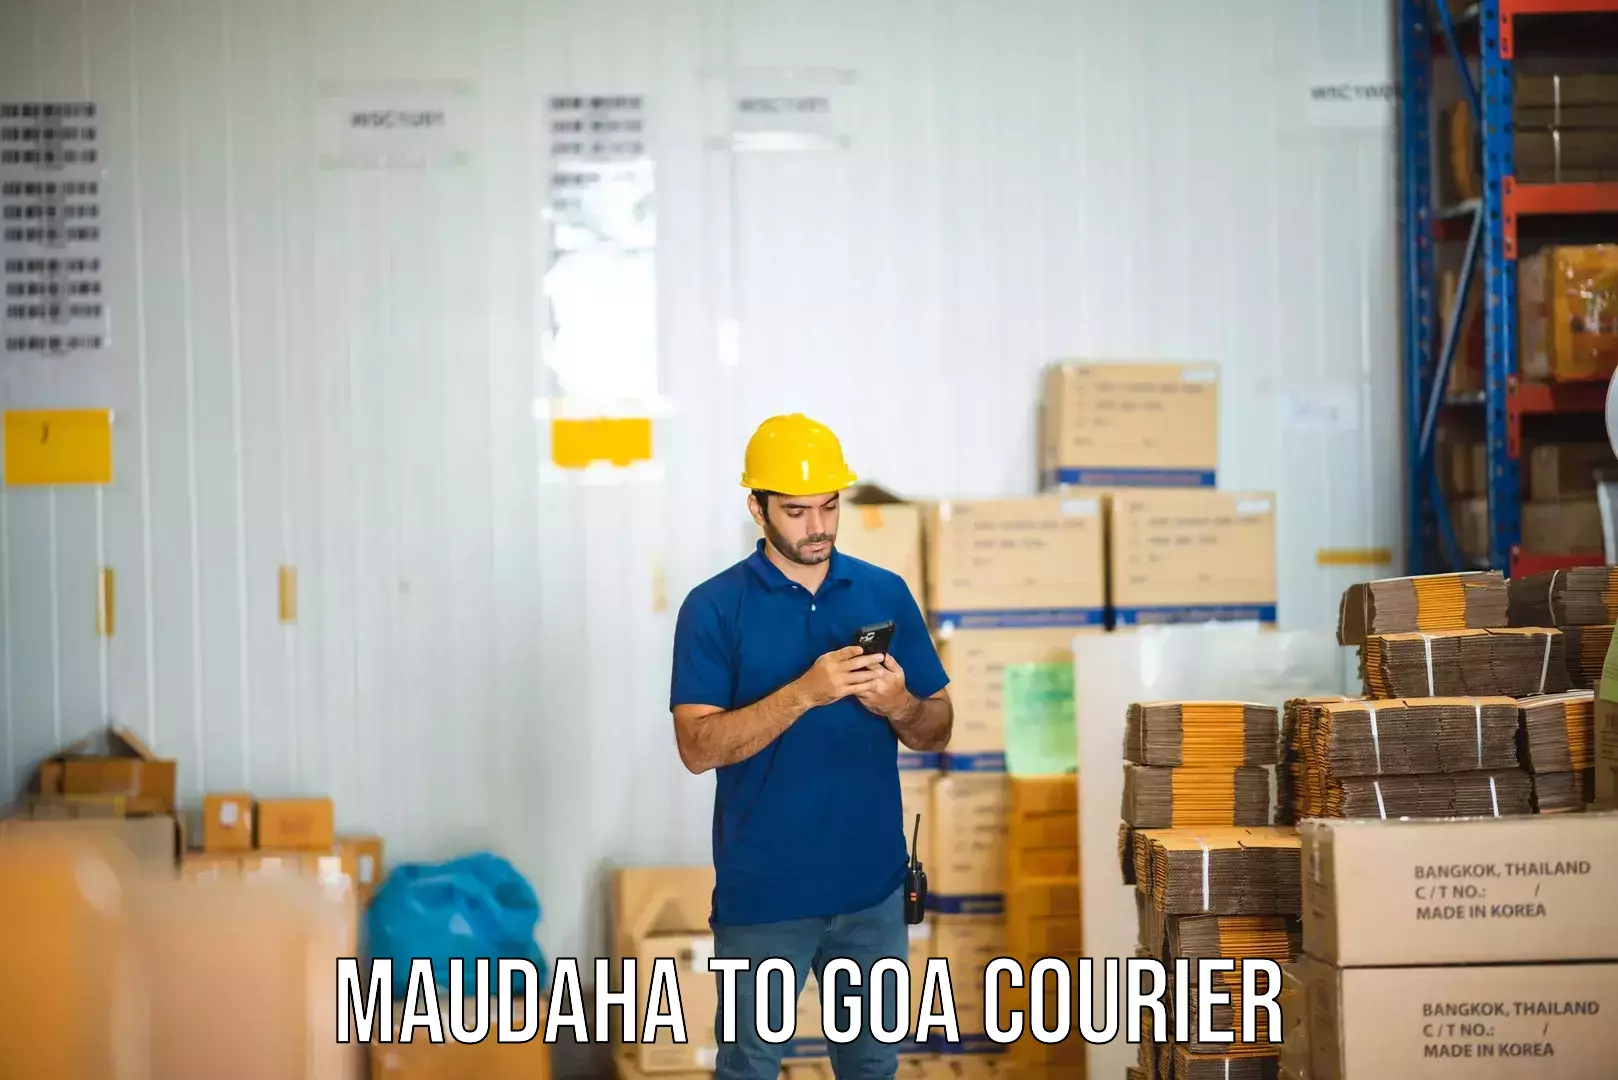 Express courier capabilities Maudaha to Vasco da Gama